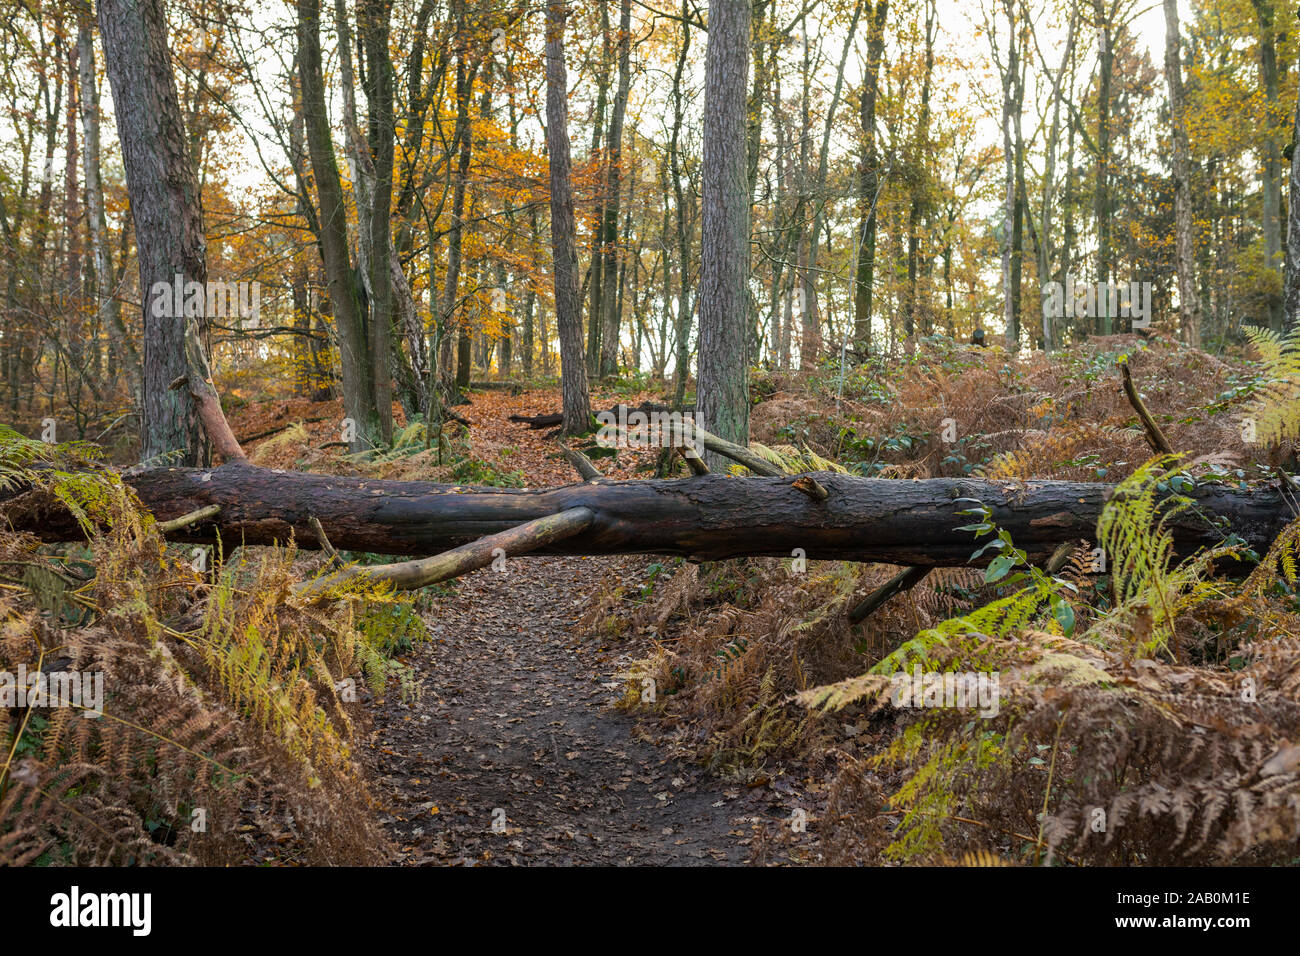 Gefallenen baum Kreuzung ein Wanderweg im Herbst Naturpark "Leudal', Provinz Noord-Limburg, Niederlande Stockfoto